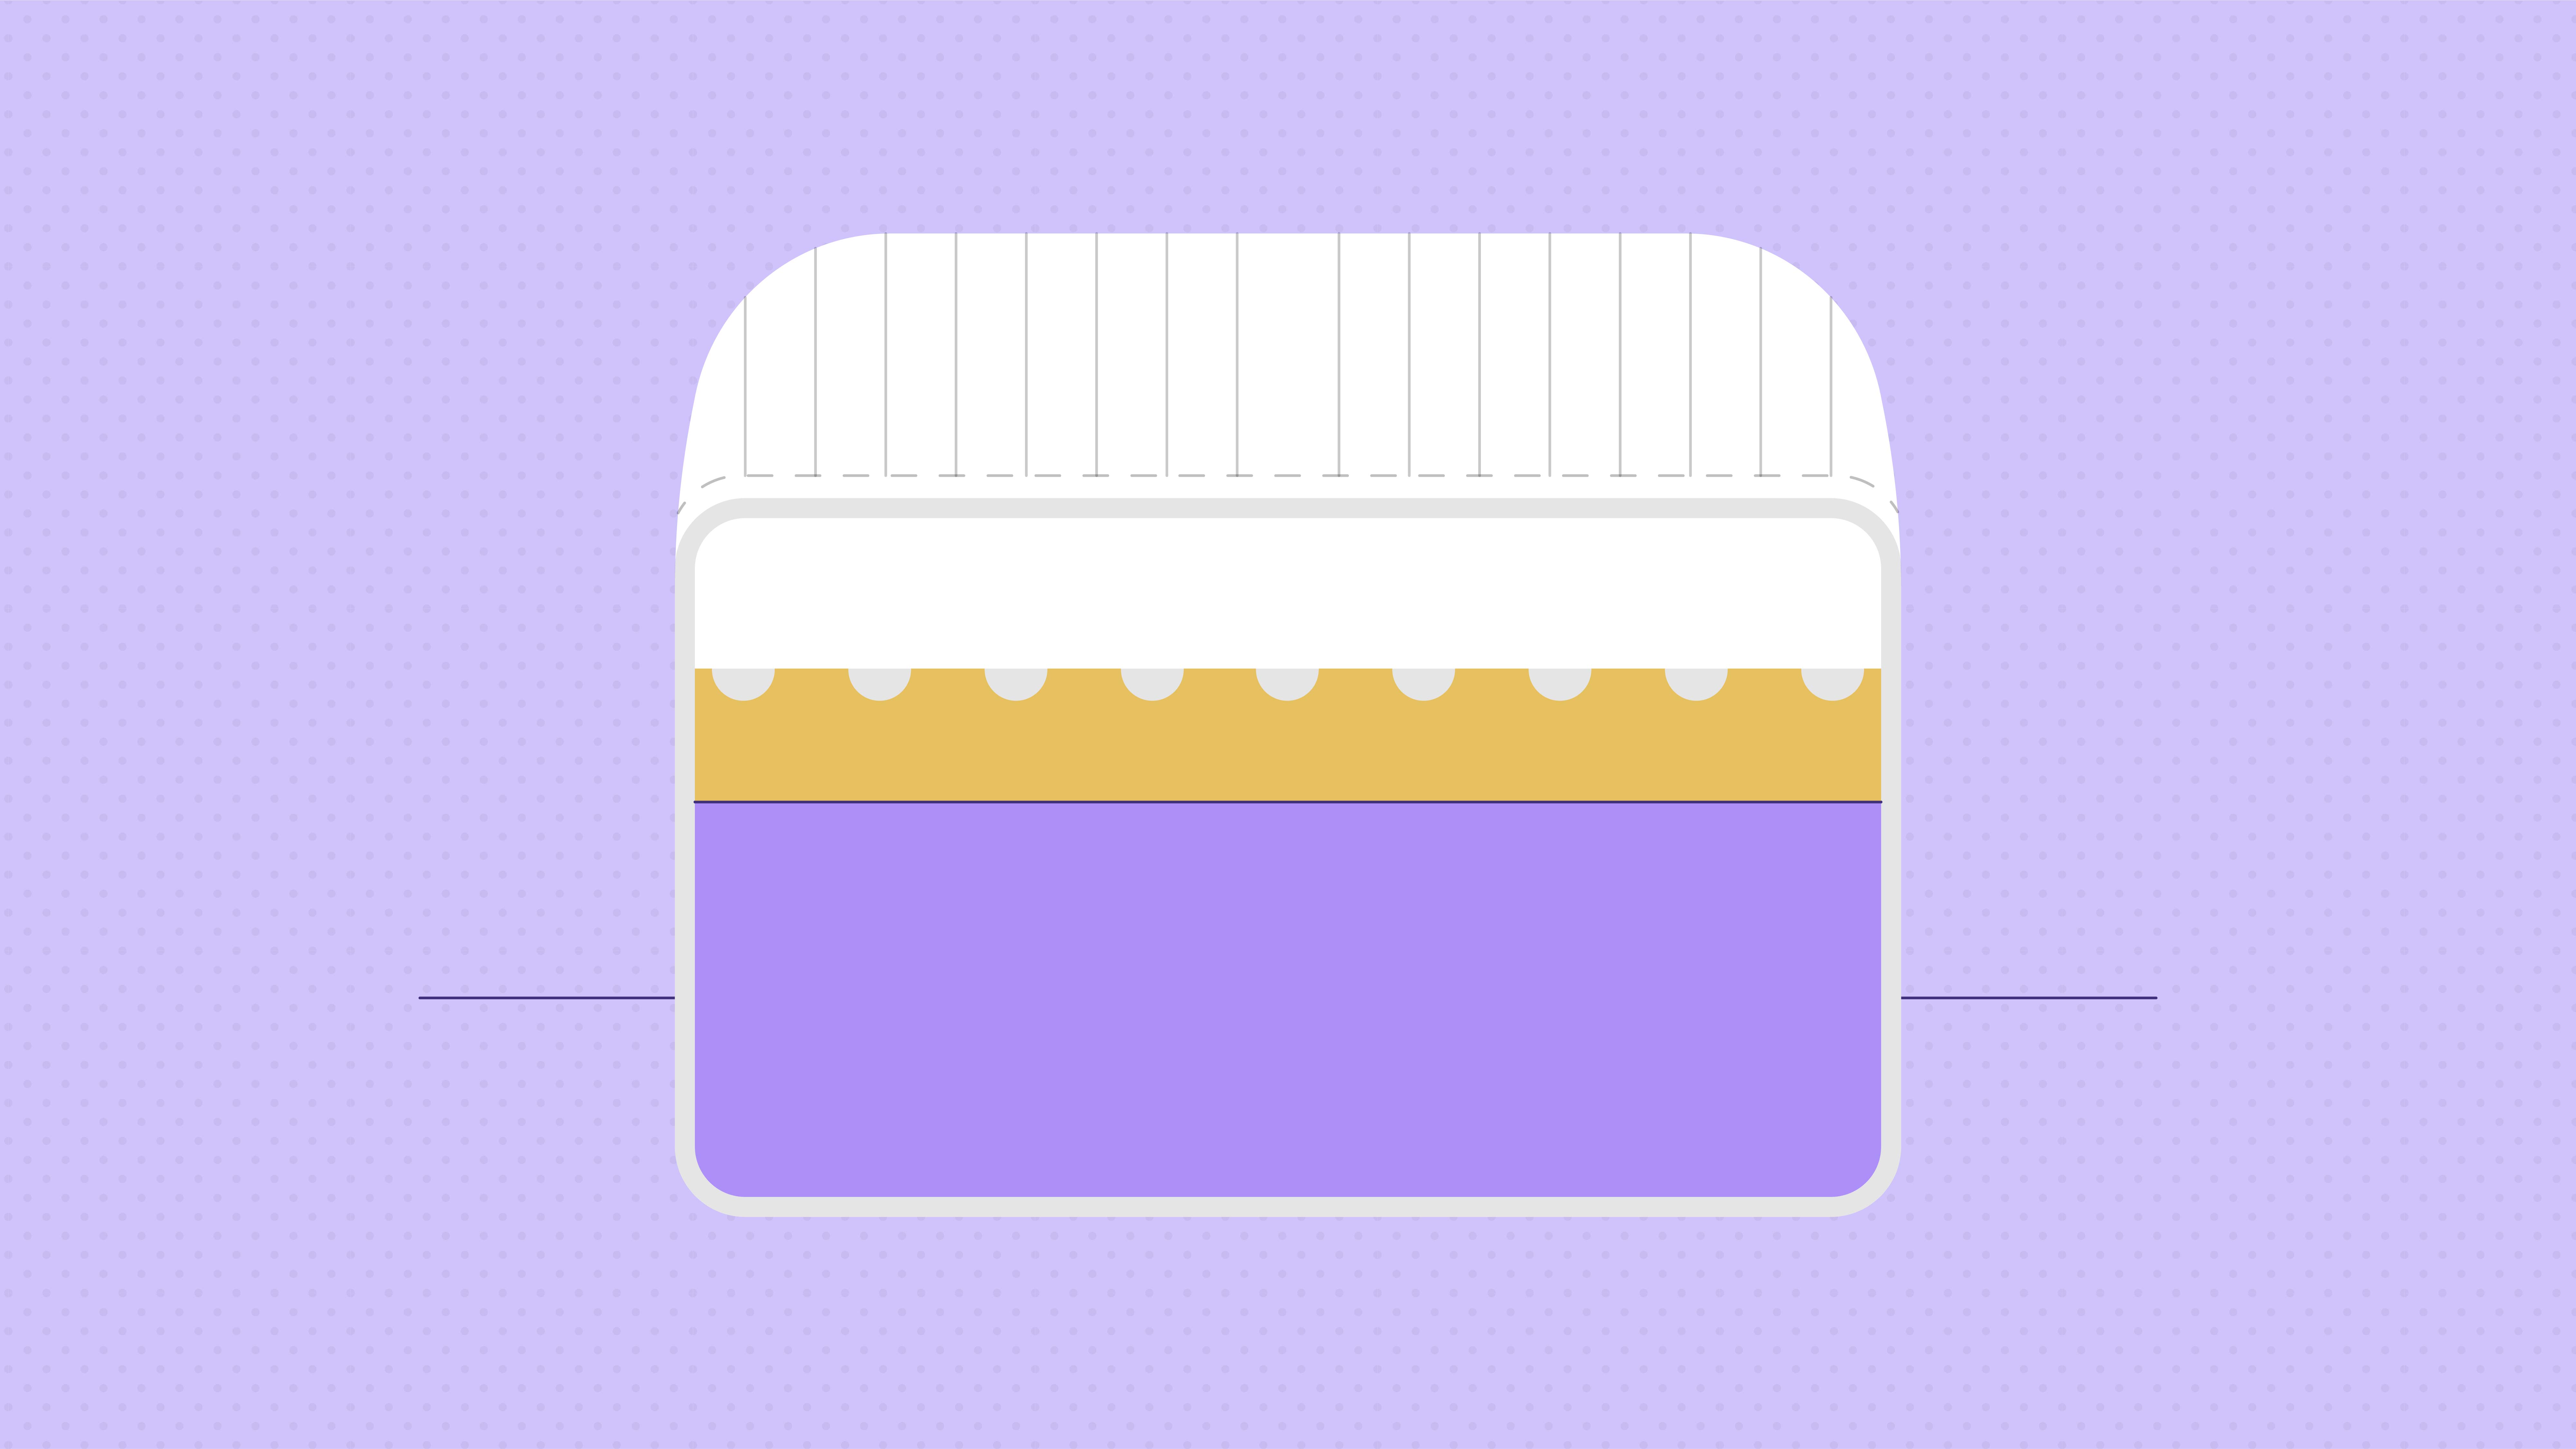 memory foam mattress density scale